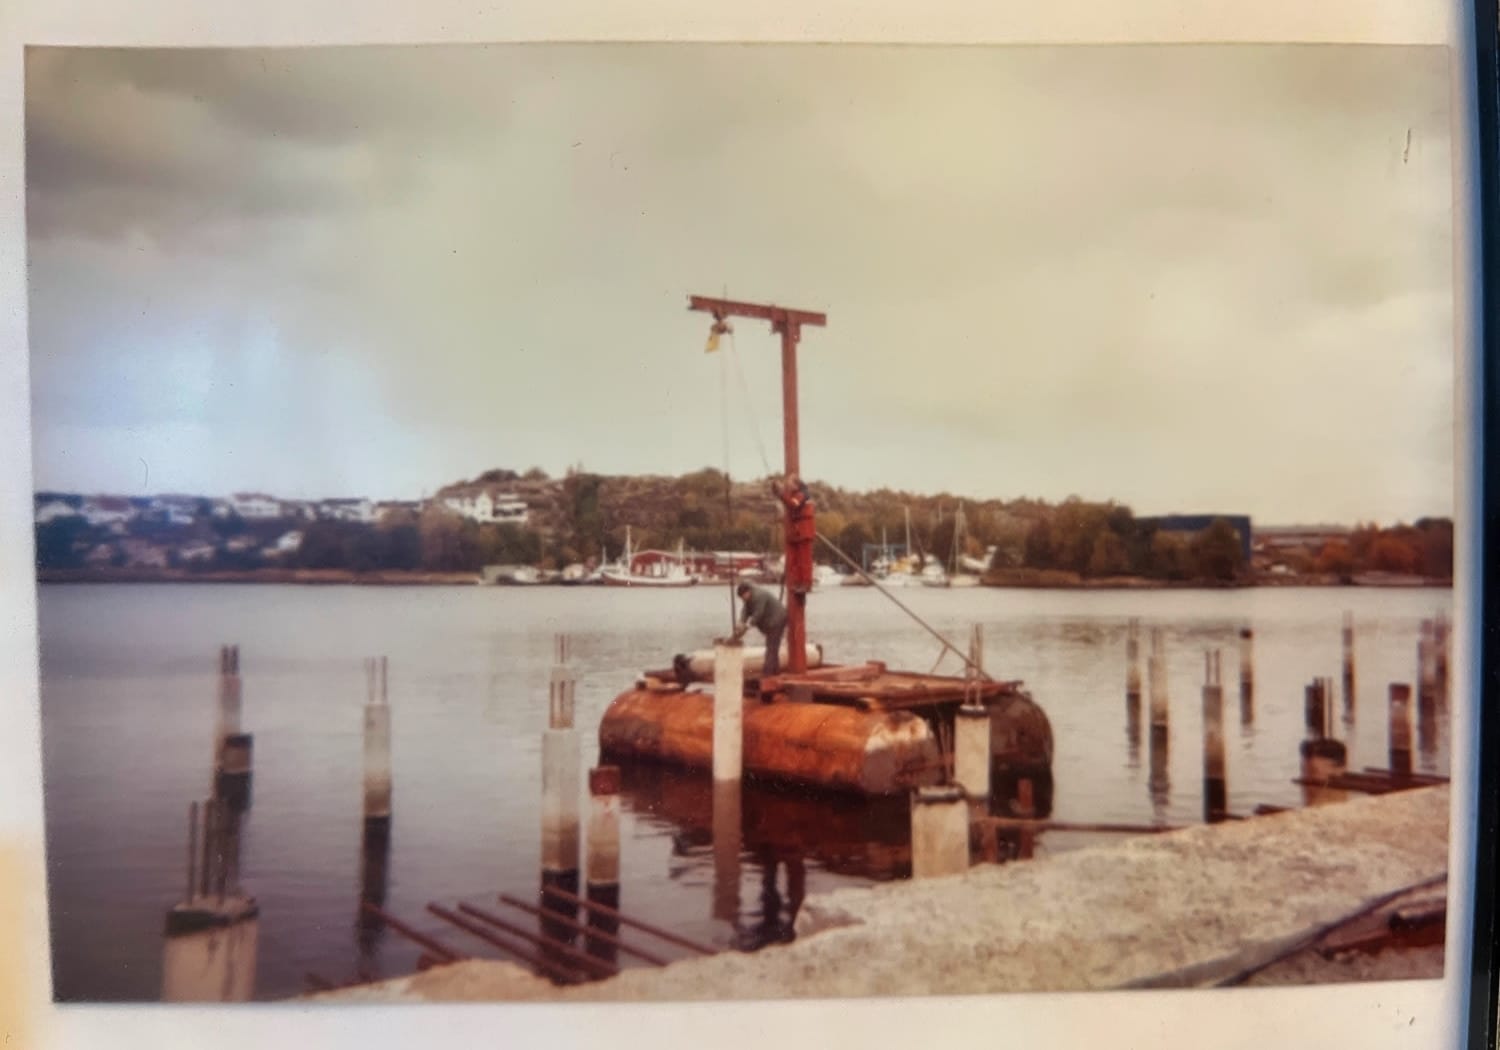 Stene Stål bygger kaia på Glombo i 1991. Foto: Øyvind Stene